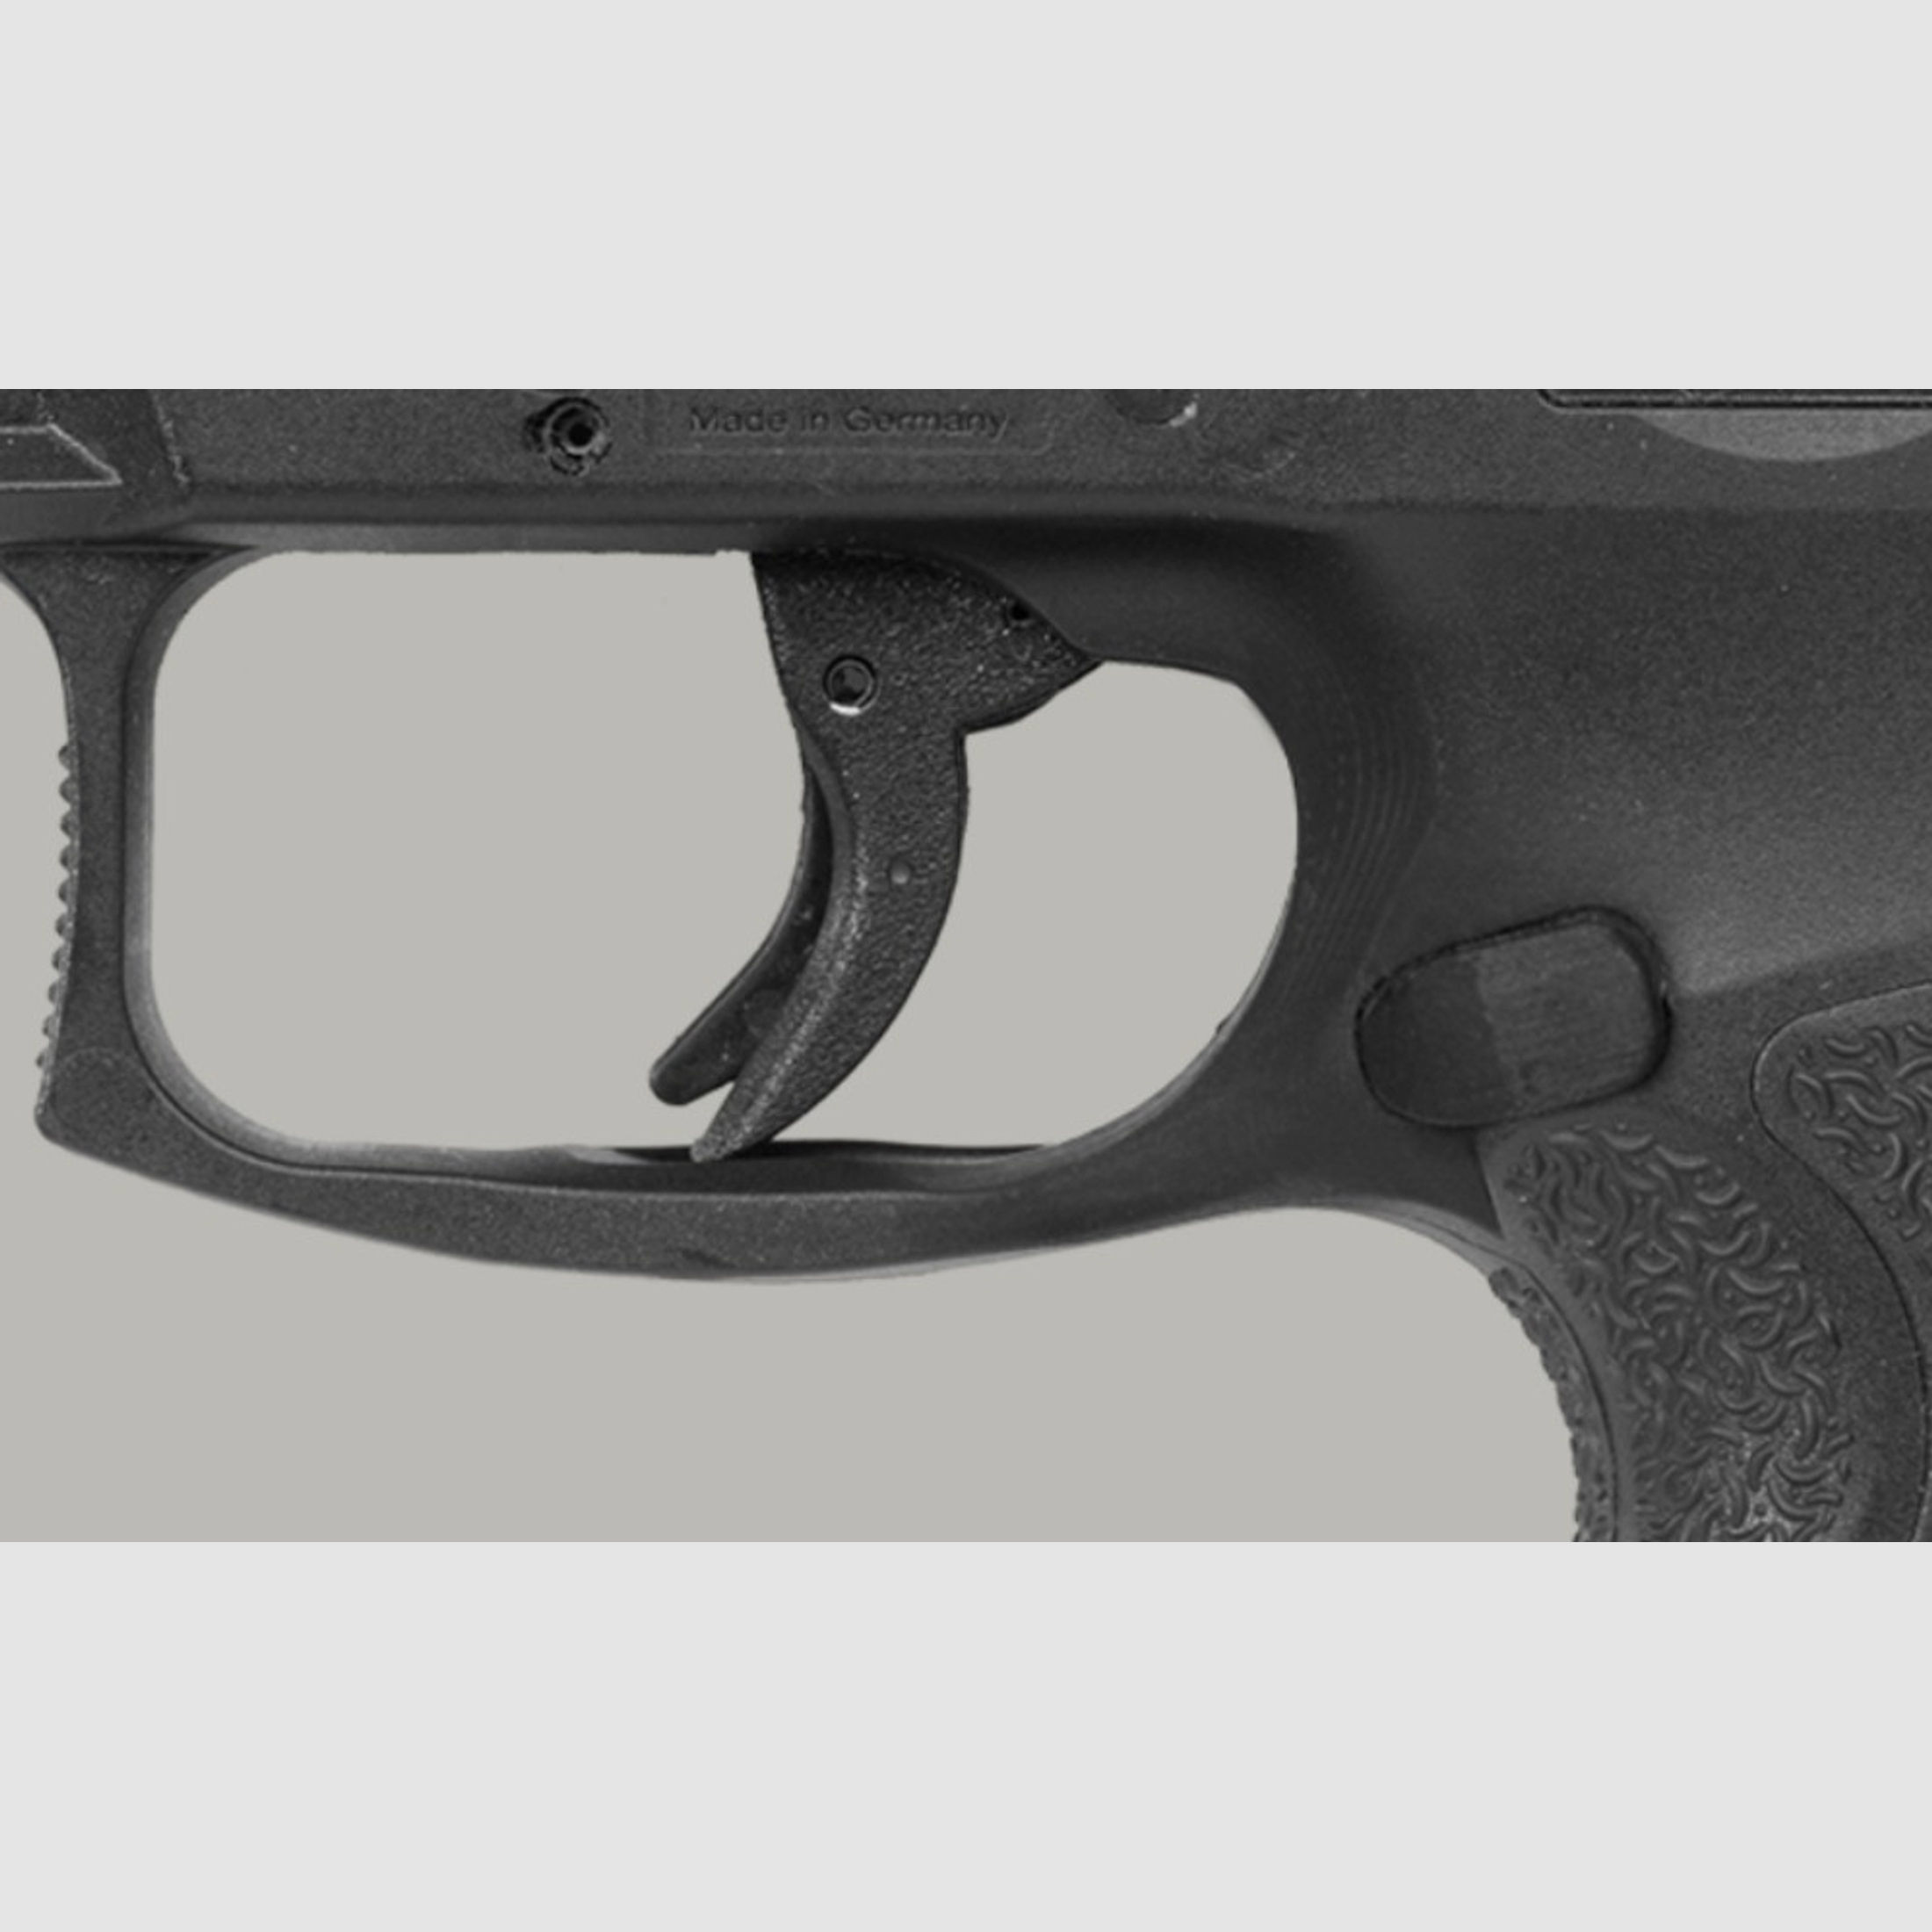 Heckler & Koch - SFP9 OR (Optical Ready), Kal. 9mm Luger